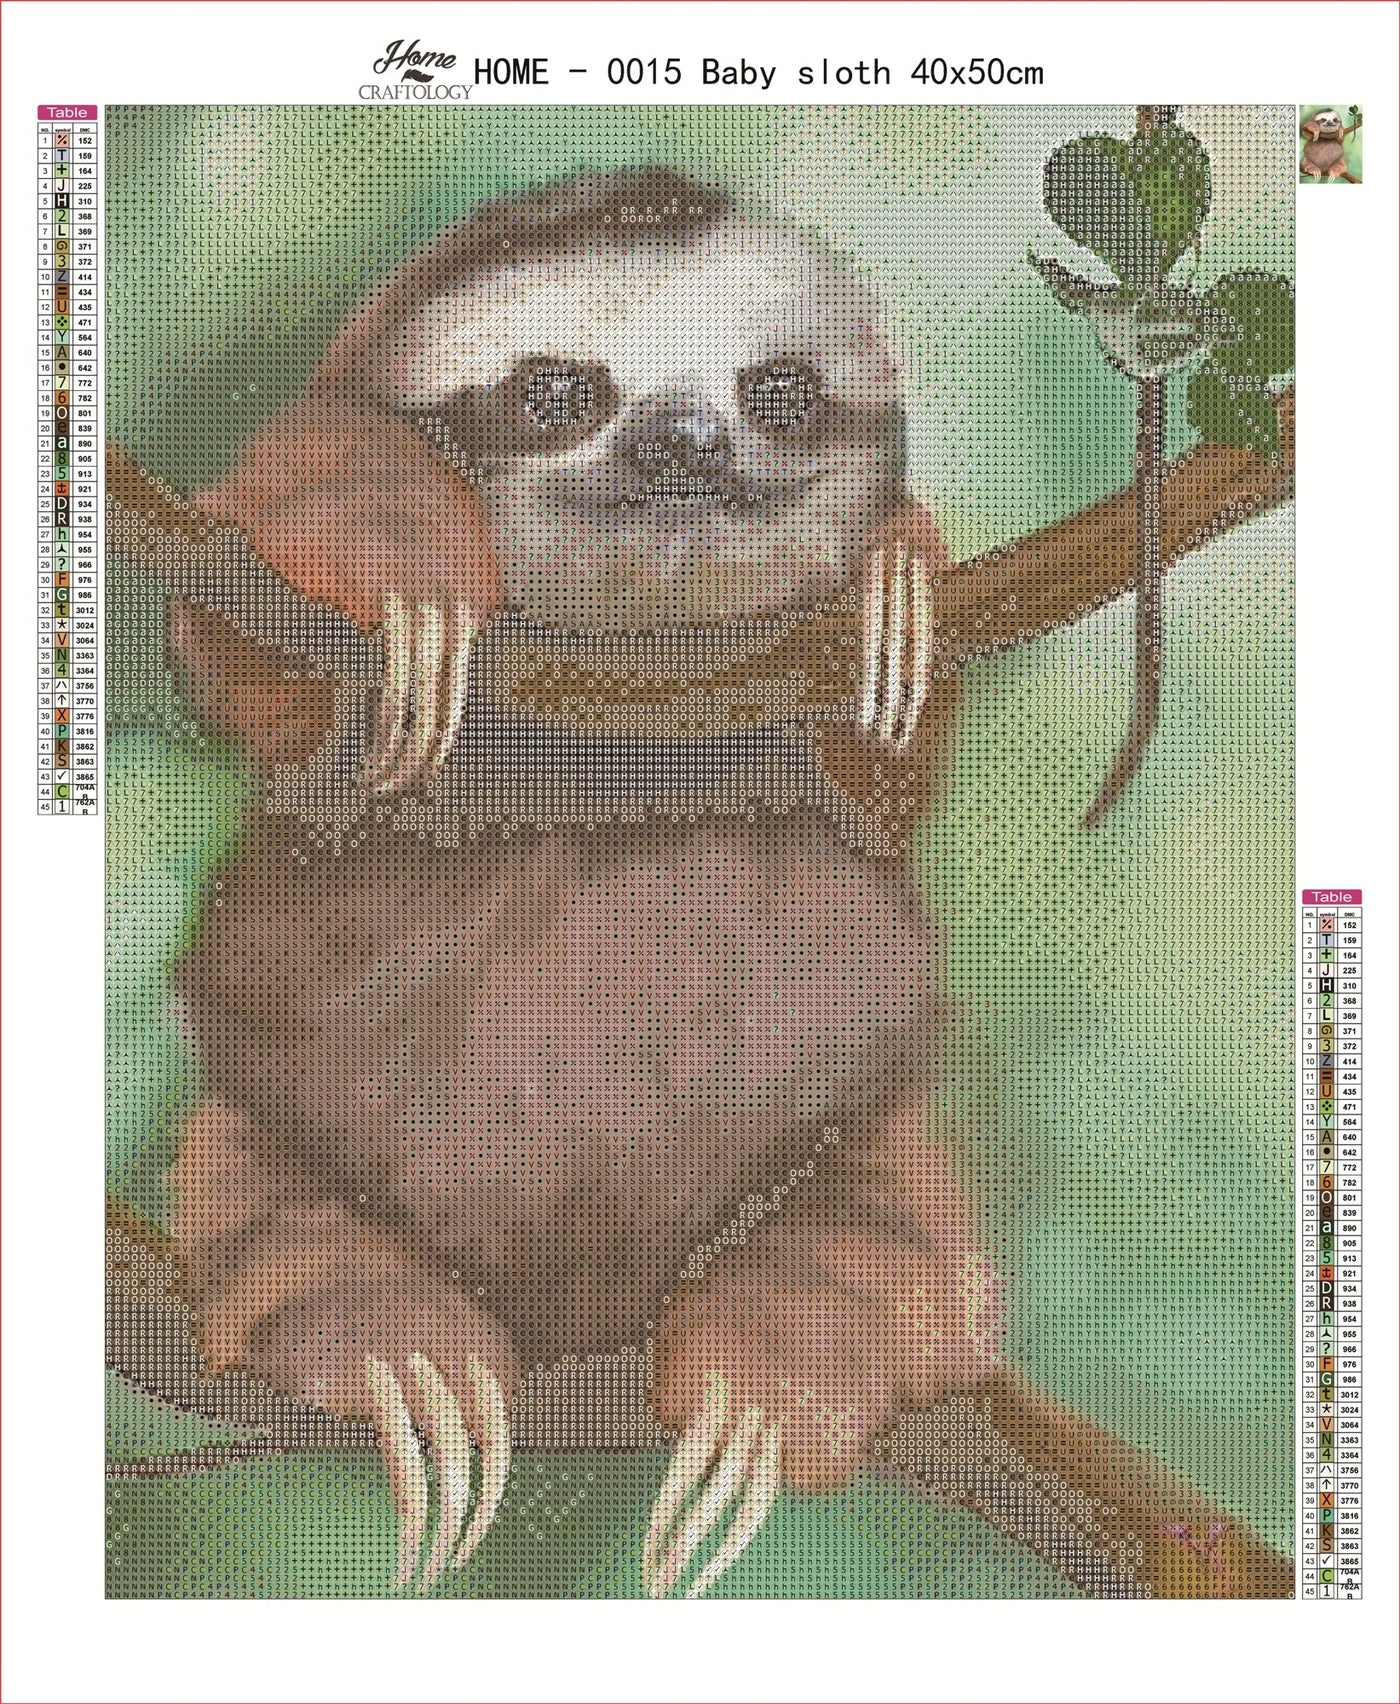 AB Baby Sloth - Premium Diamond Painting Kit